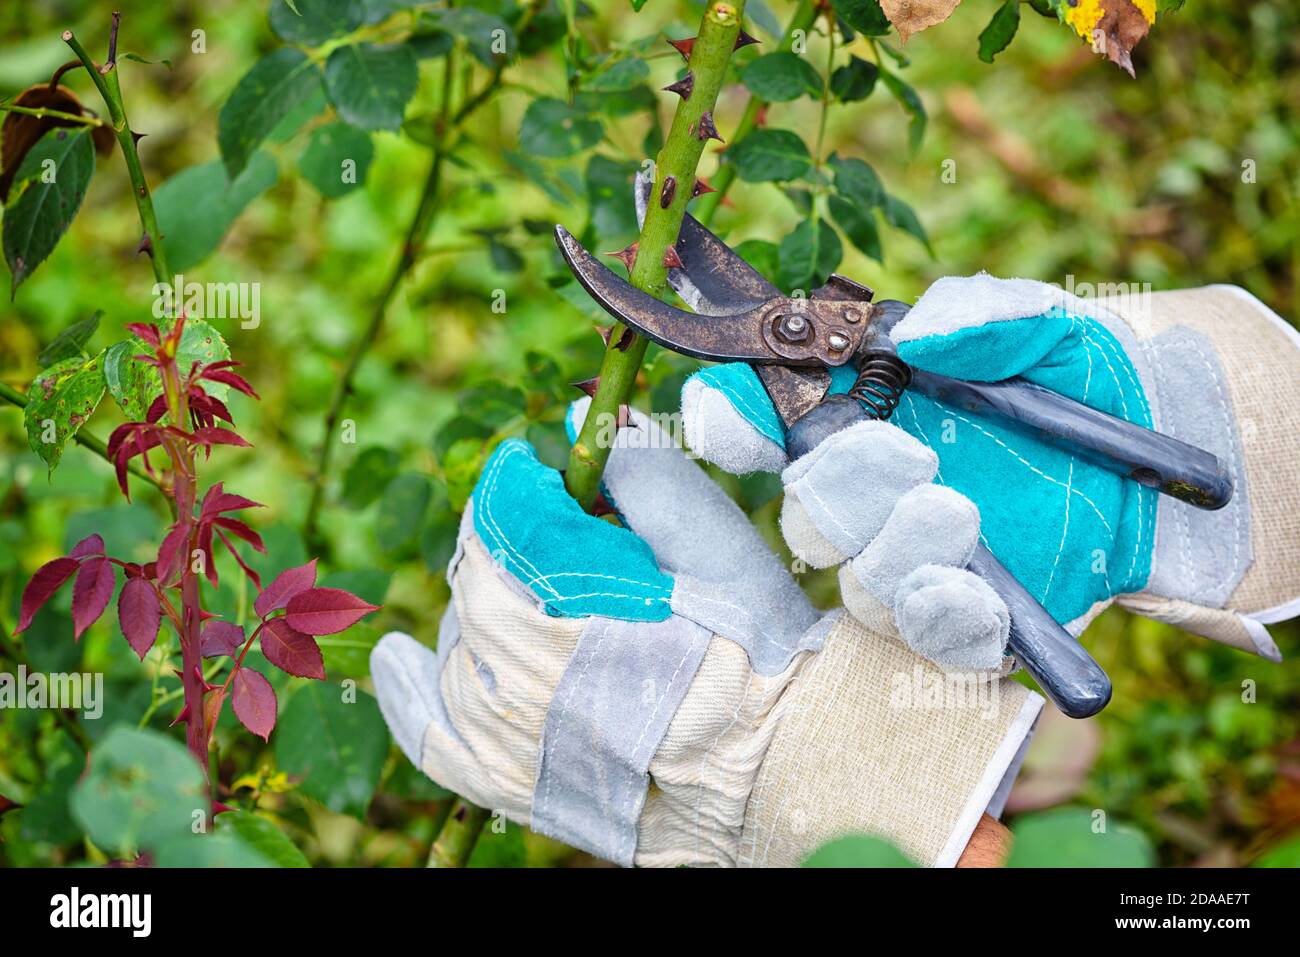 Pruning roses in the garden, gardener's hands with secateurs Stock Photo